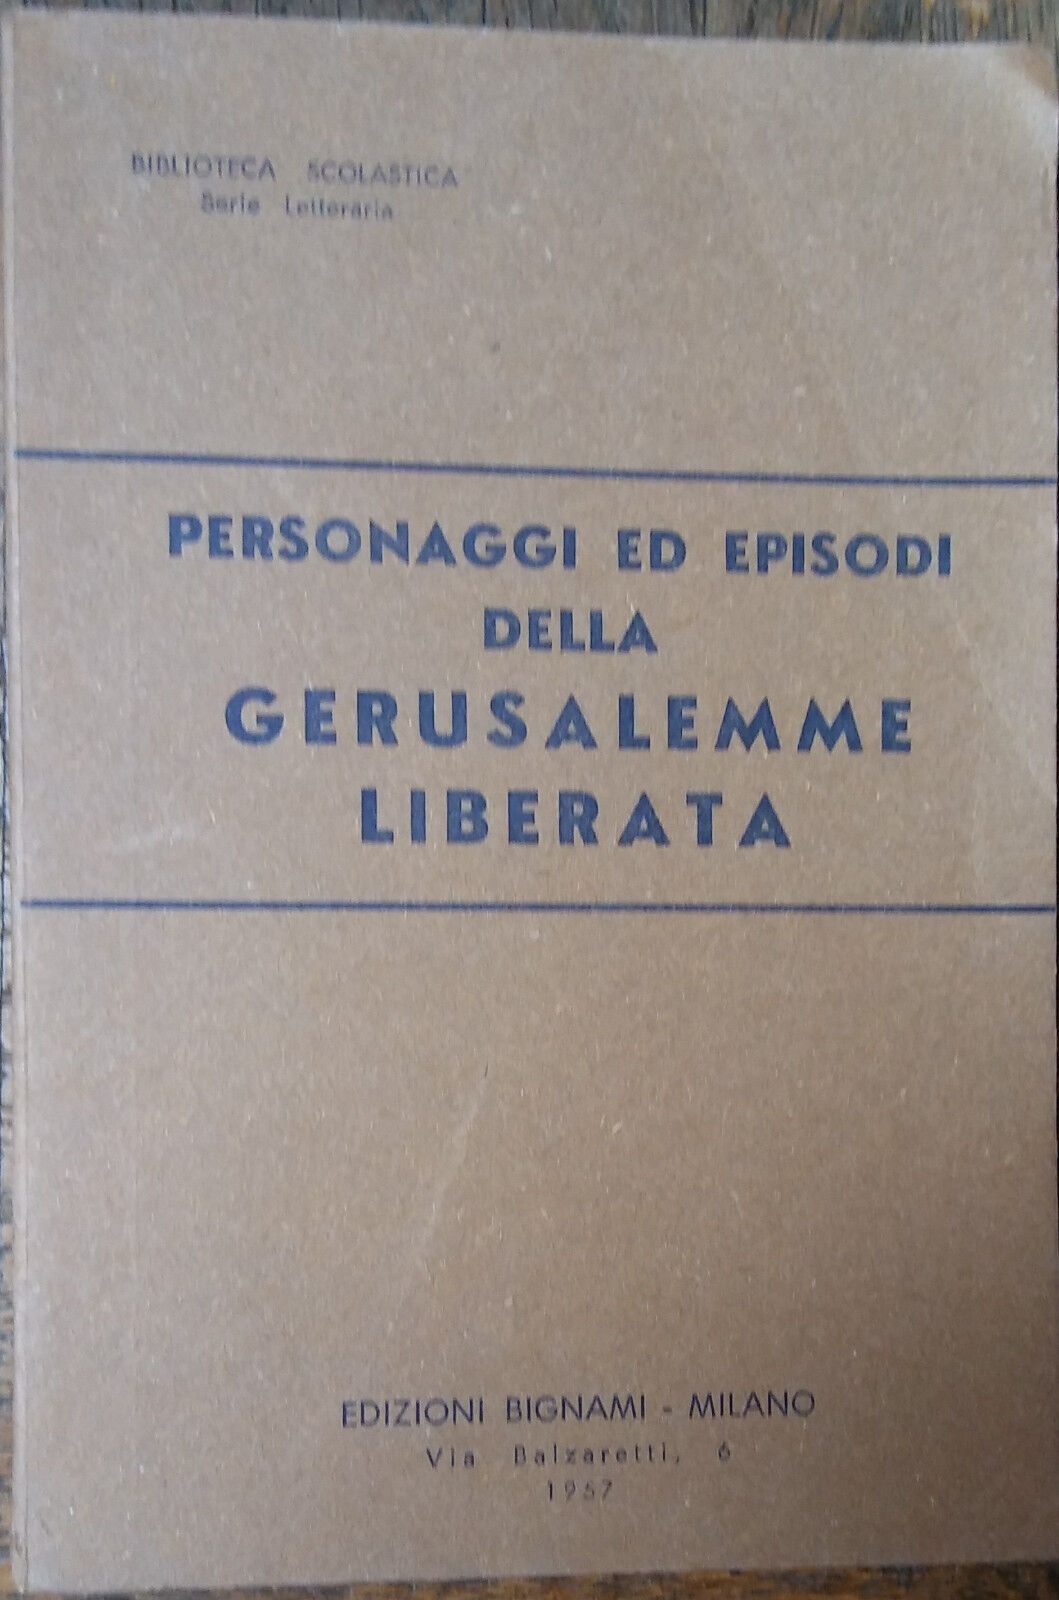 Personaggi ed episodi della Gerusalemme liberata-AA.VV-Edizioni Bignami,1955-R